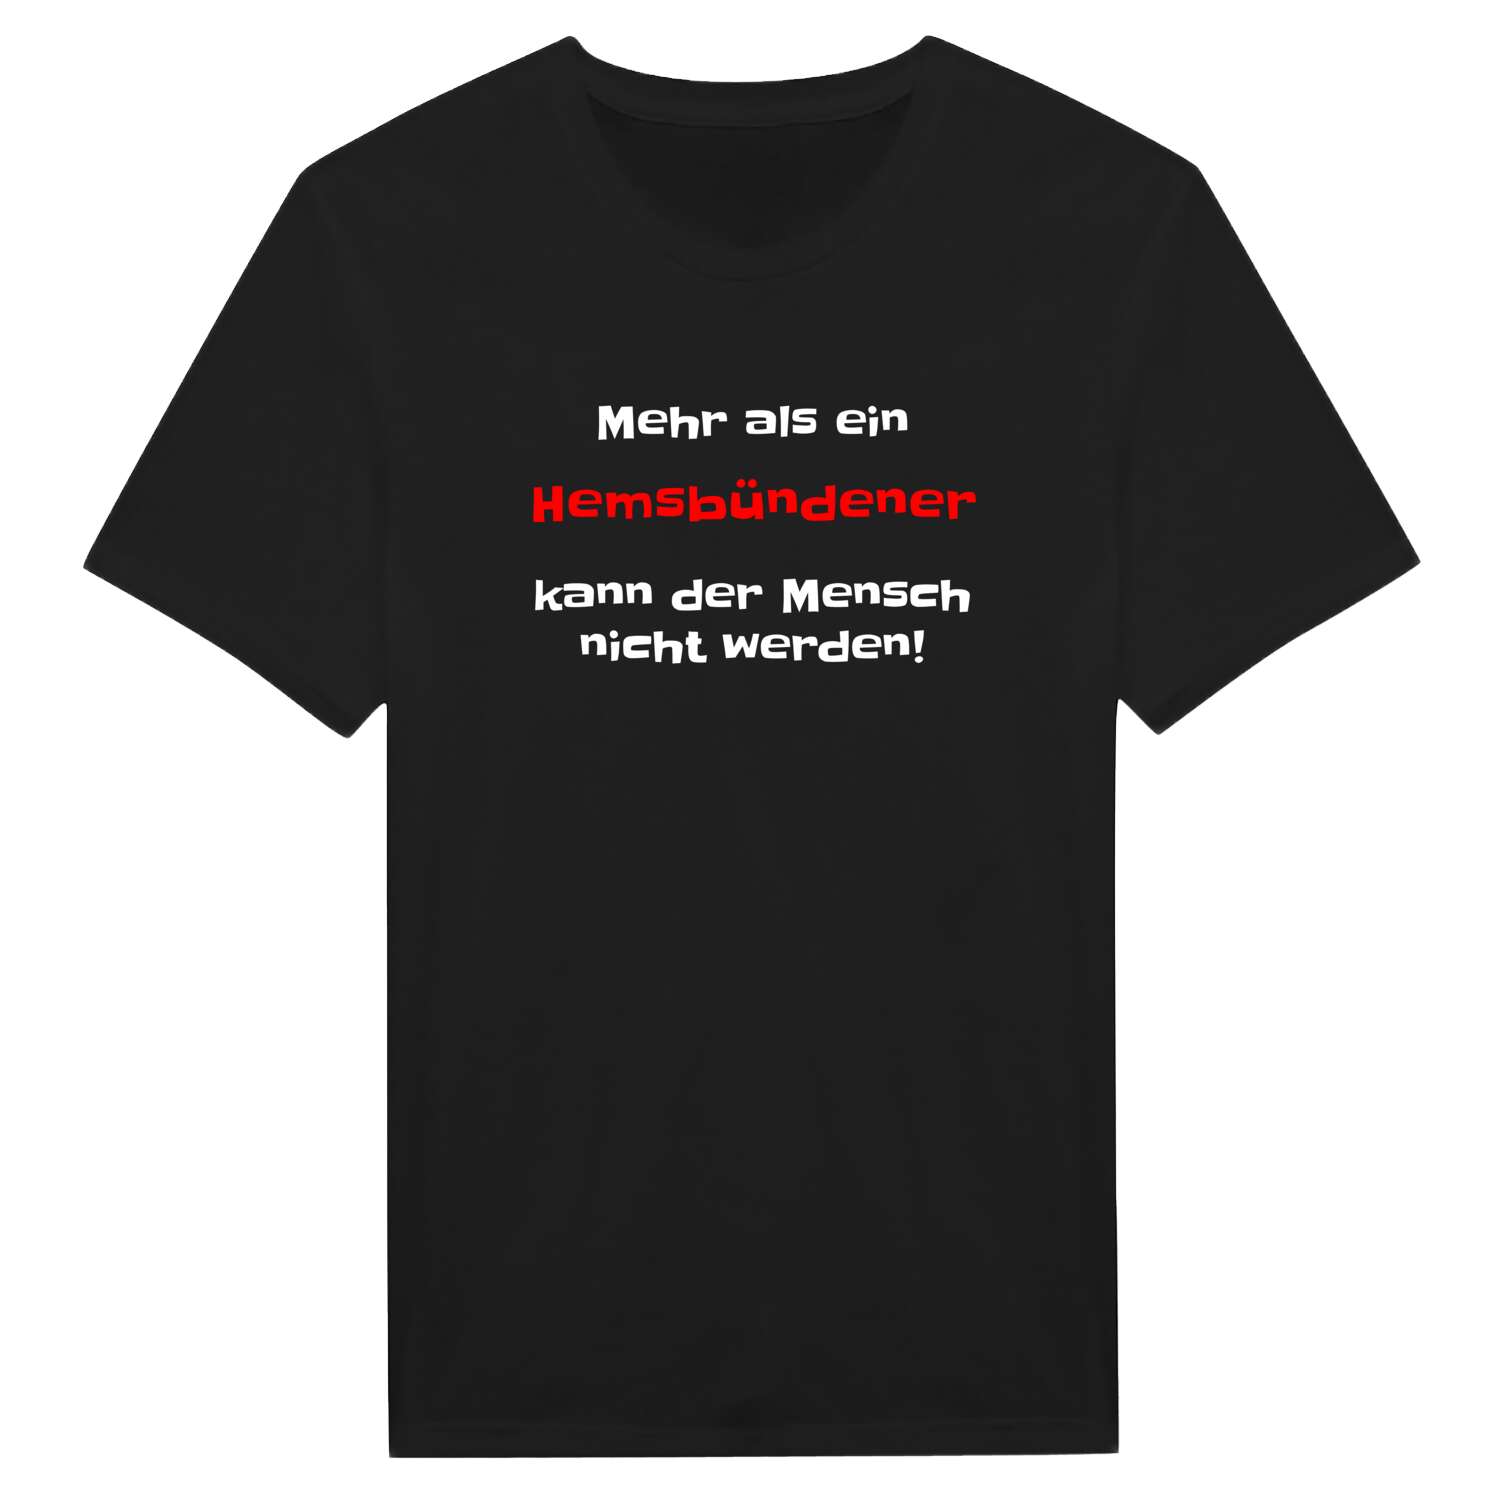 Hemsbünde T-Shirt »Mehr als ein«